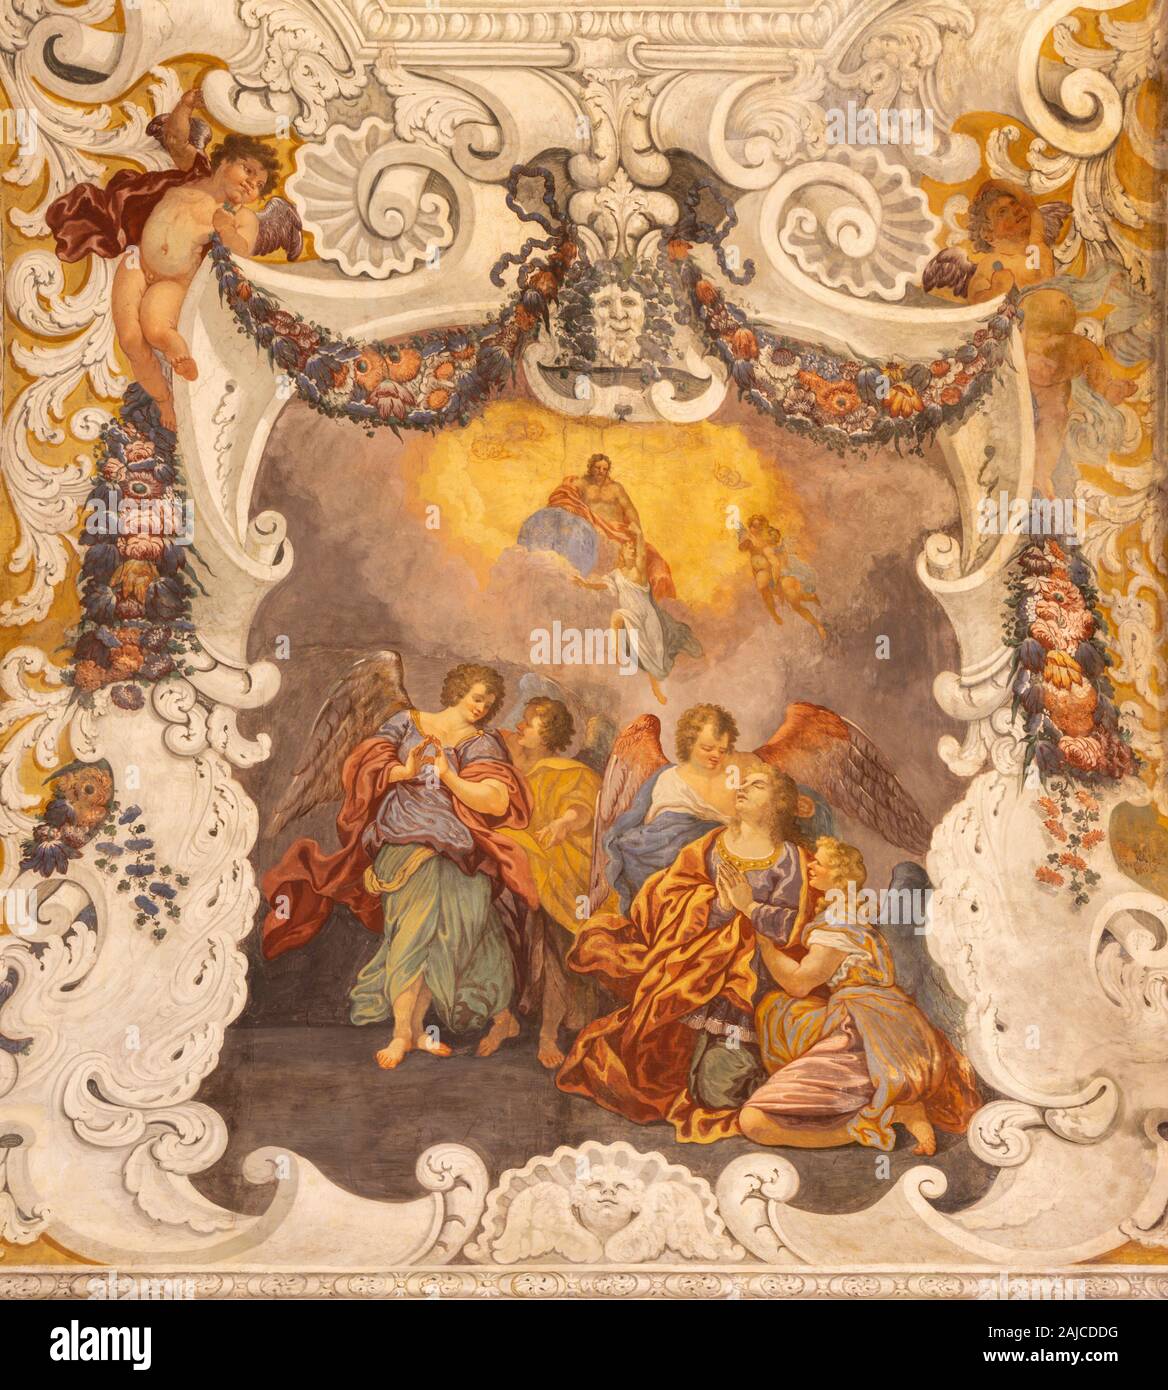 CATANIA, ITALY - APRIL 8, 2018: The detail glory of Santa Agata fresco from presbytery in church Chiesa di Sant'Agata al Borgo by Giovanni Lo Coco fro Stock Photo